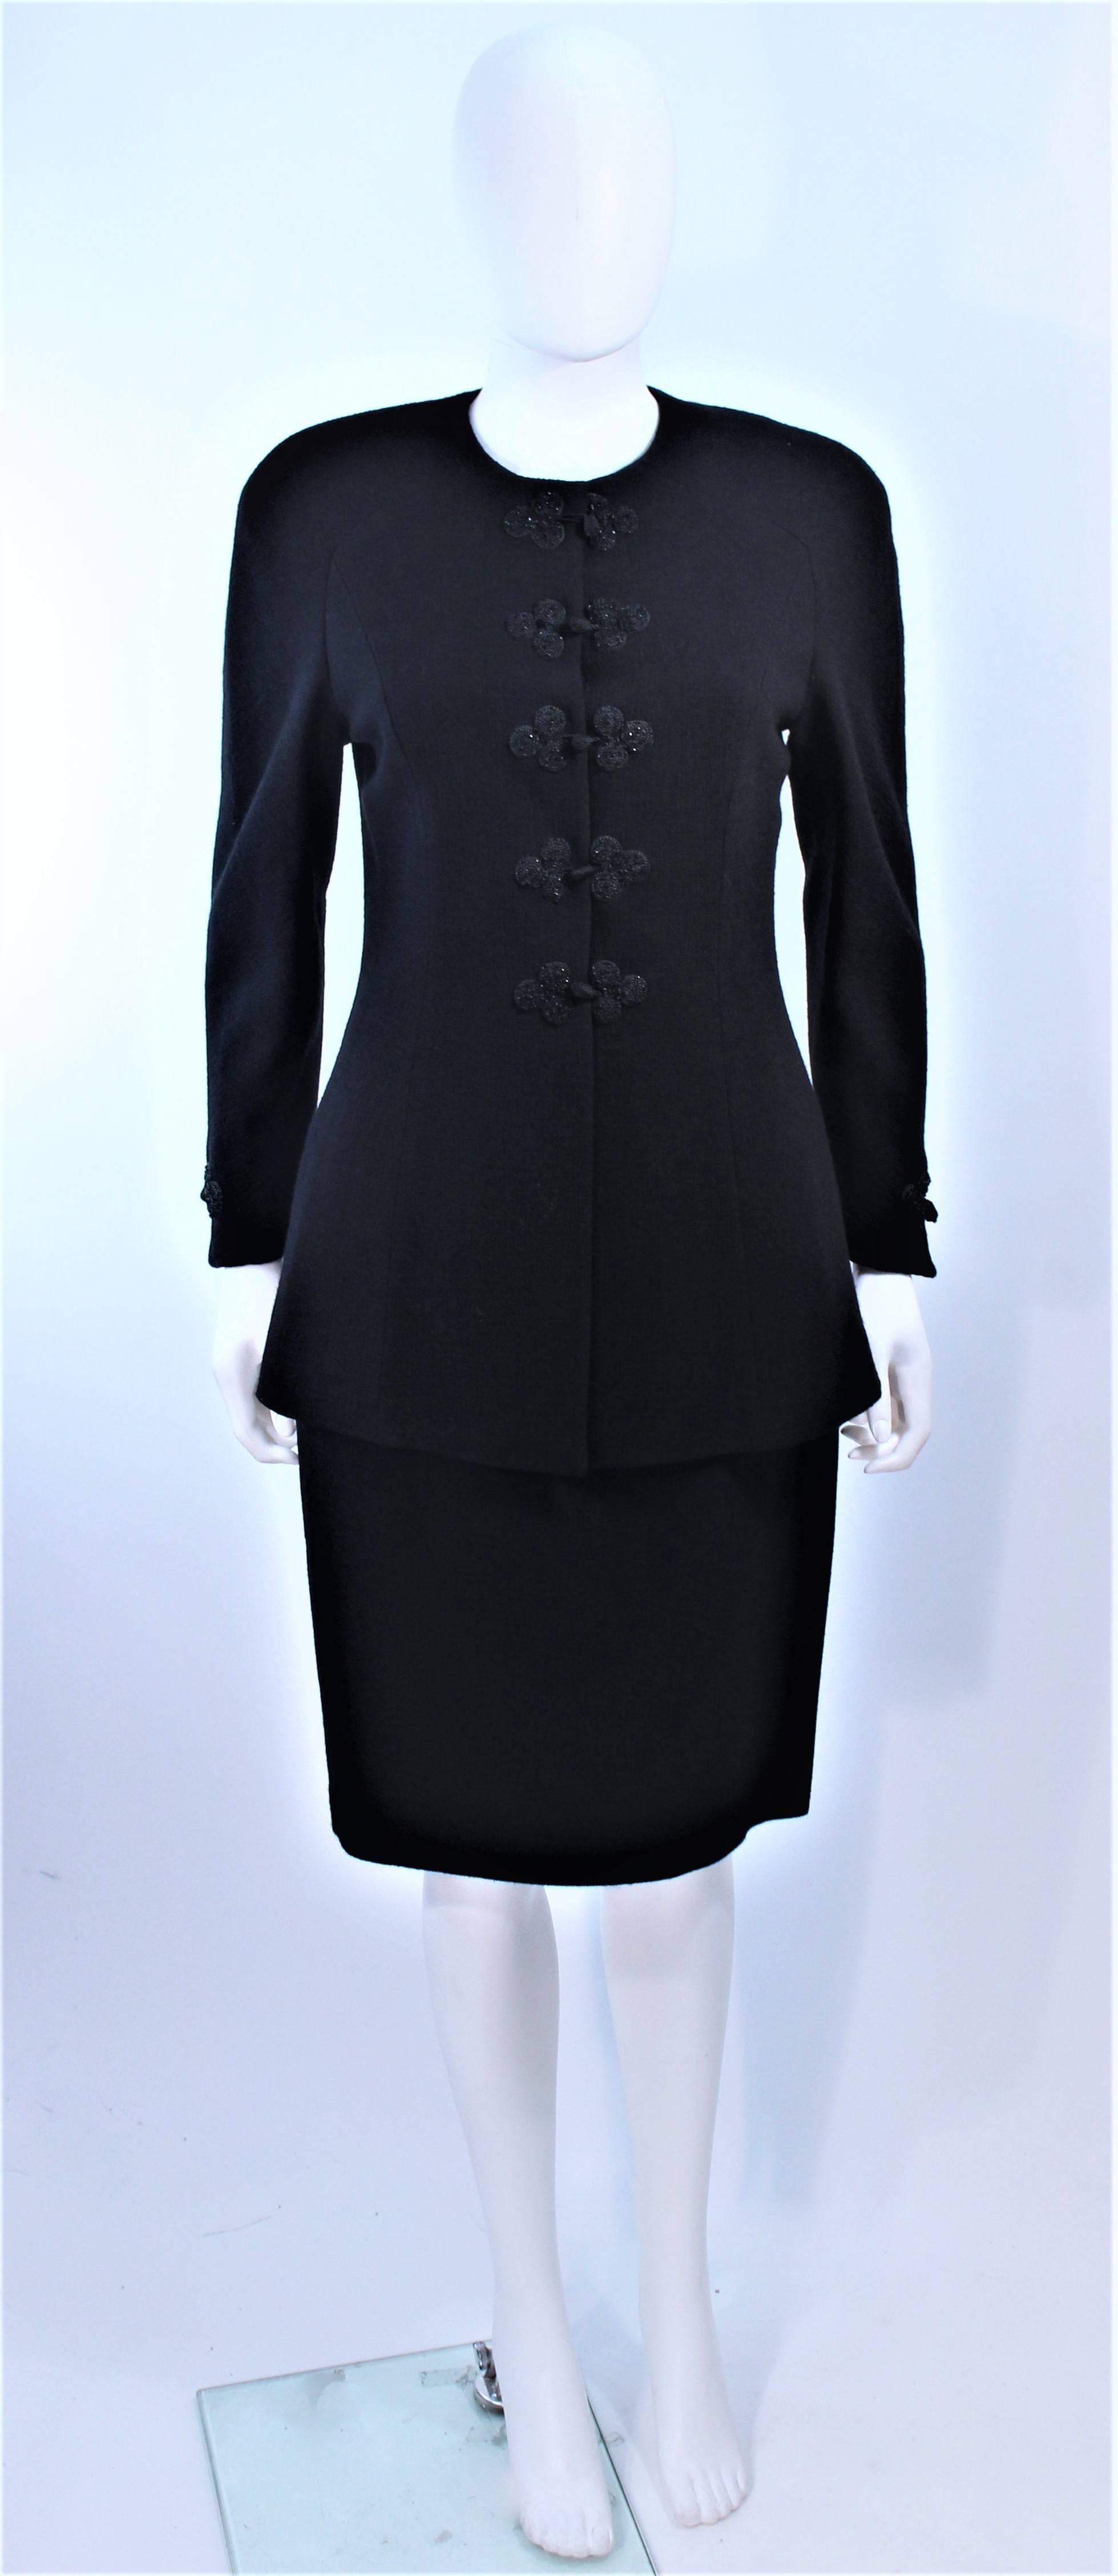 Ce tailleur jupe Valentino est composé d'une laine noire et présente des détails de boutons perlés. Il y a une jupe crayon de style classique avec fermeture à glissière. En excellent état d'origine.

**Veuillez croiser les mesures pour une